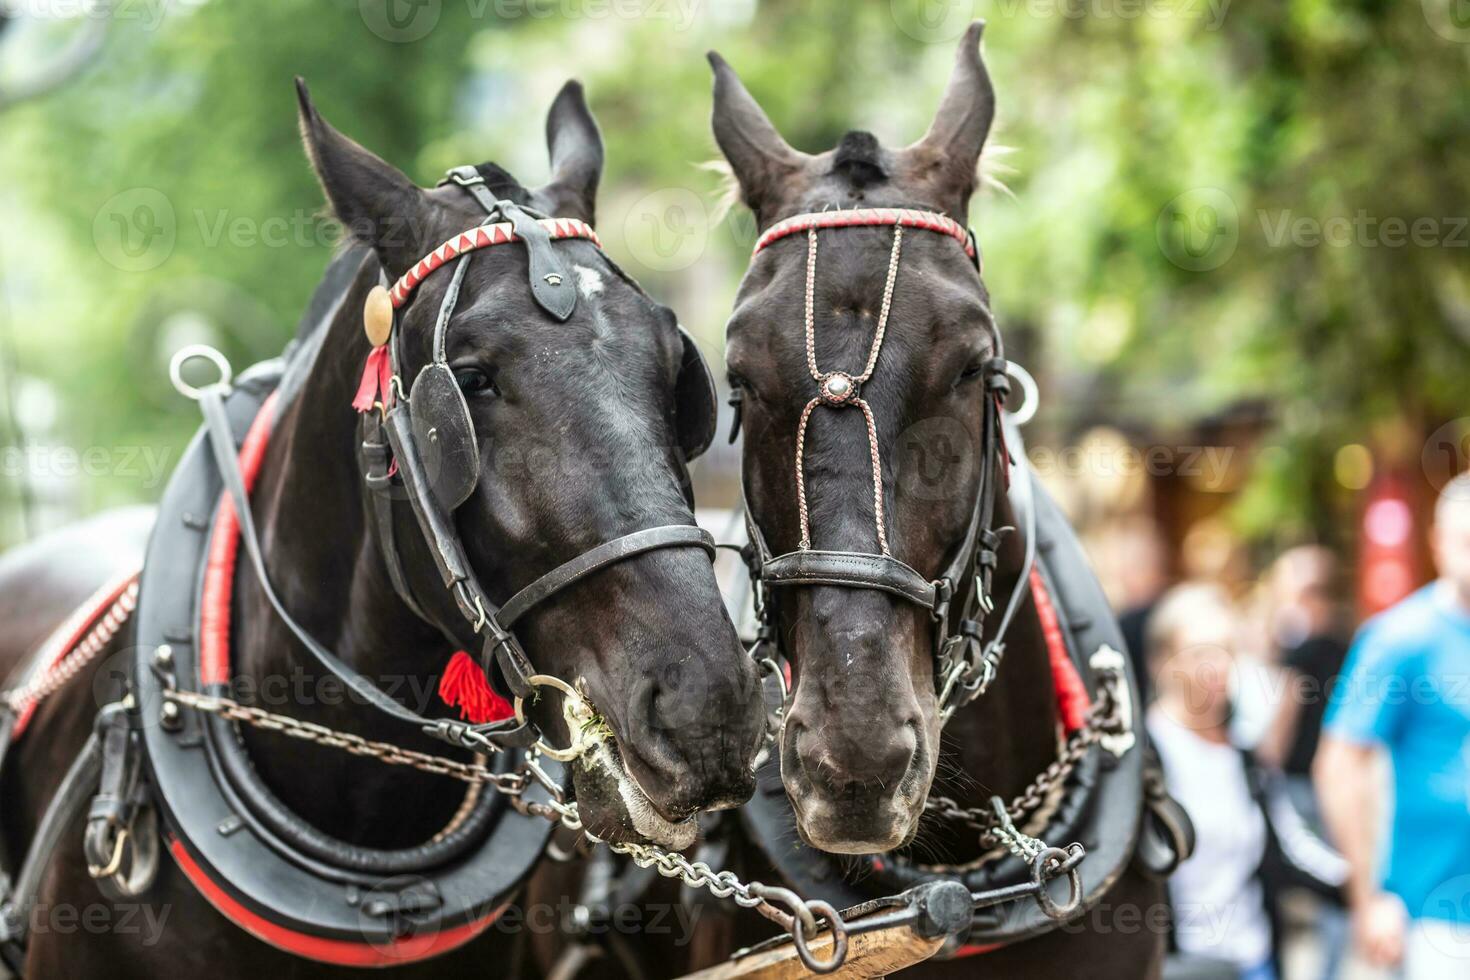 par av svart hästar sätta deras huvuden i sele tillsammans i en upptagen turistiska gata foto